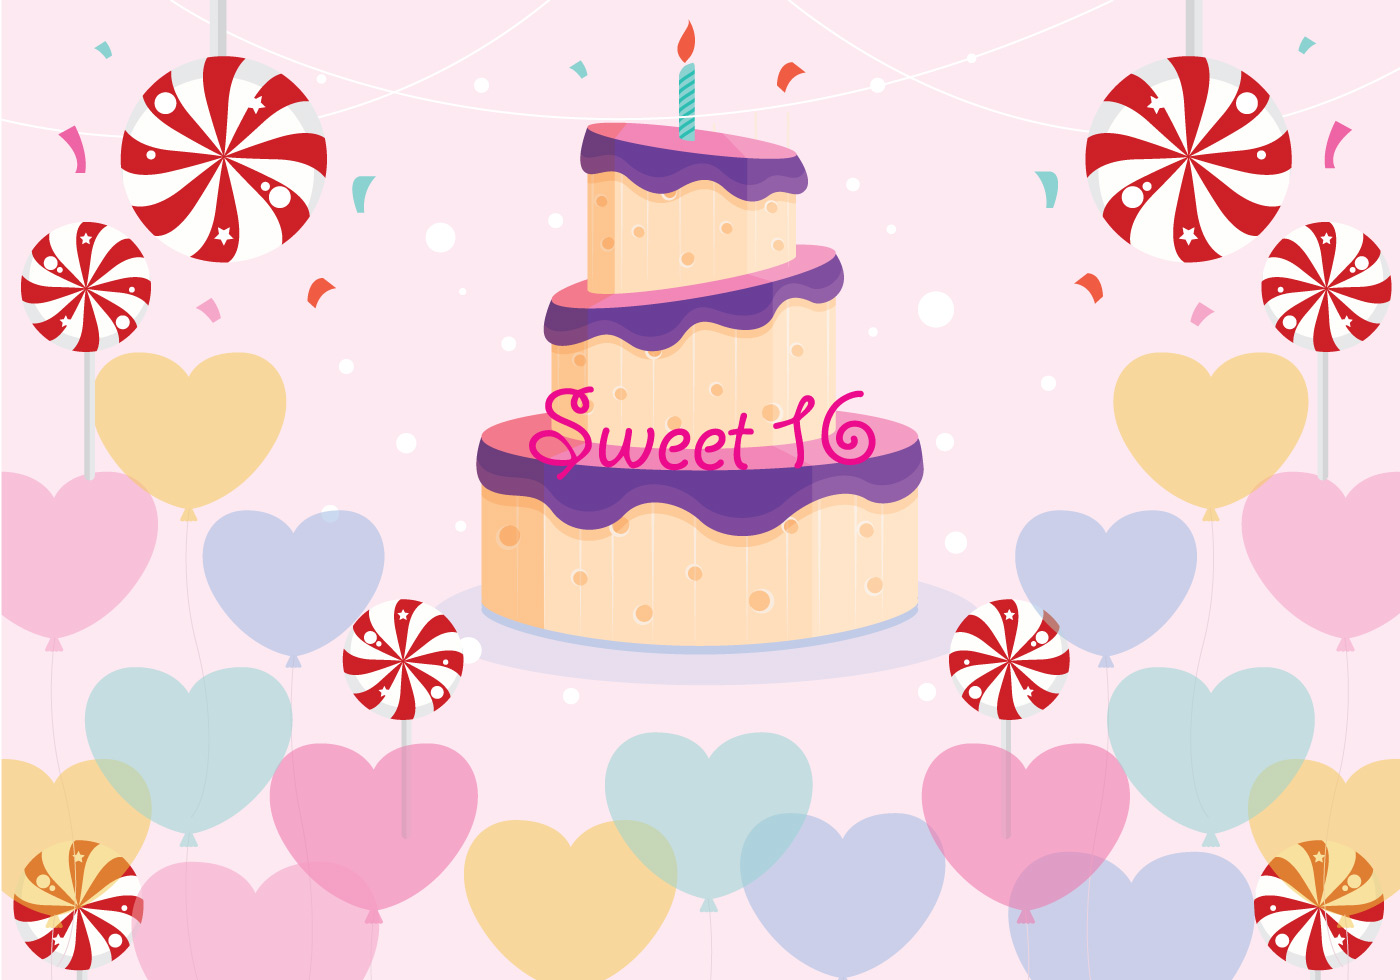 Download Sweet 16 Birthday Vector - Download Free Vector Art, Stock ...